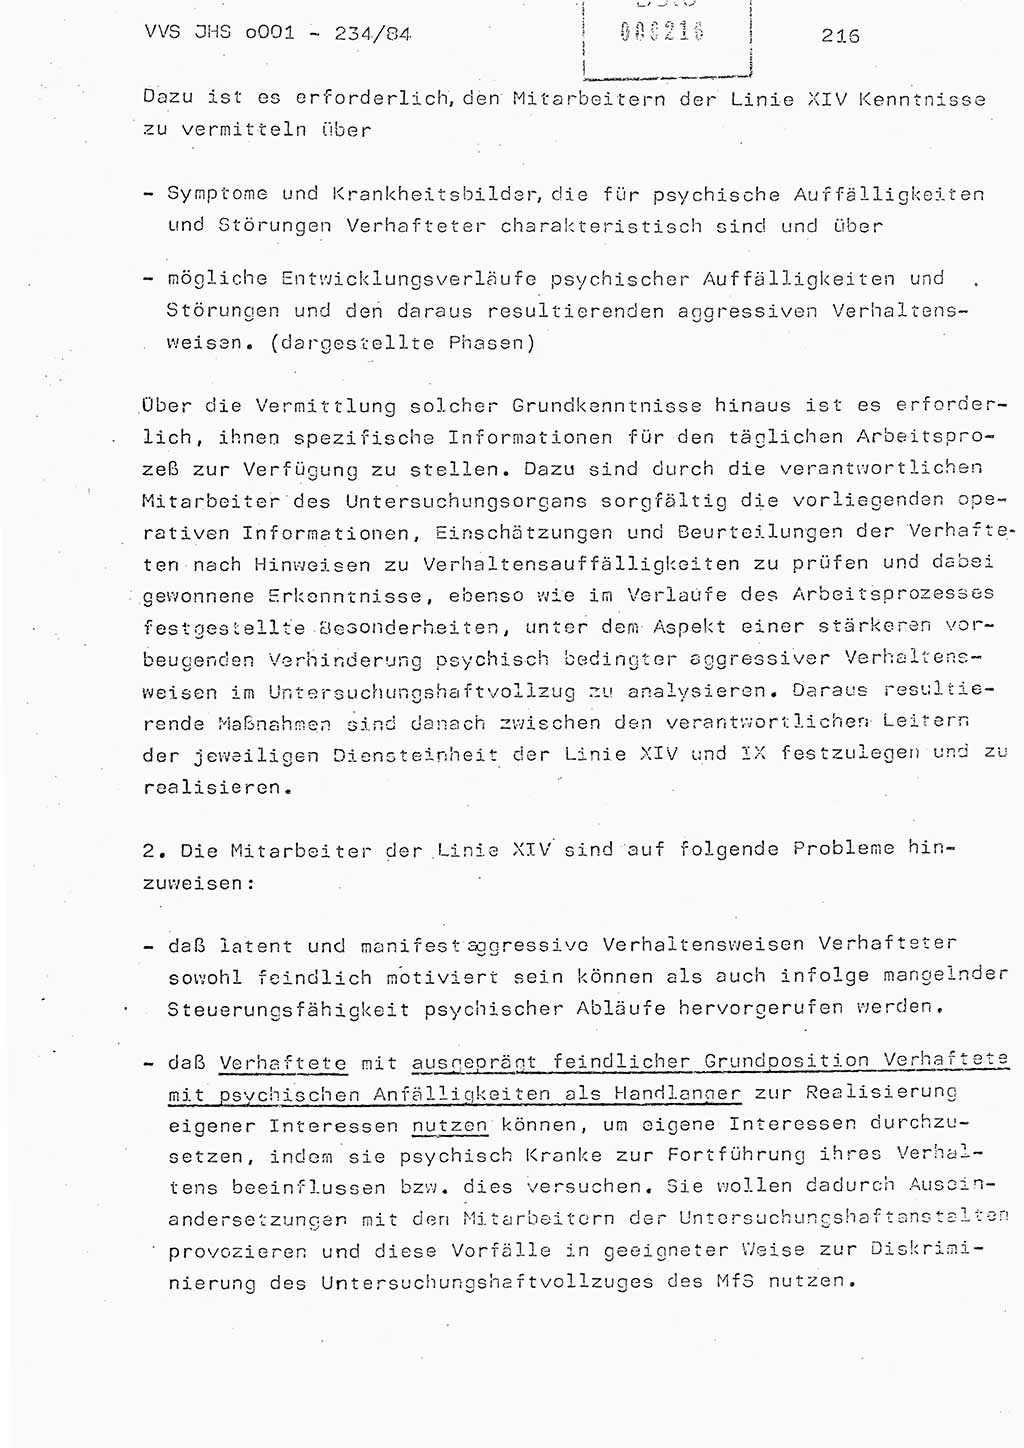 Dissertation Oberst Siegfried Rataizick (Abt. ⅩⅣ), Oberstleutnant Volkmar Heinz (Abt. ⅩⅣ), Oberstleutnant Werner Stein (HA Ⅸ), Hauptmann Heinz Conrad (JHS), Ministerium für Staatssicherheit (MfS) [Deutsche Demokratische Republik (DDR)], Juristische Hochschule (JHS), Vertrauliche Verschlußsache (VVS) o001-234/84, Potsdam 1984, Seite 216 (Diss. MfS DDR JHS VVS o001-234/84 1984, S. 216)